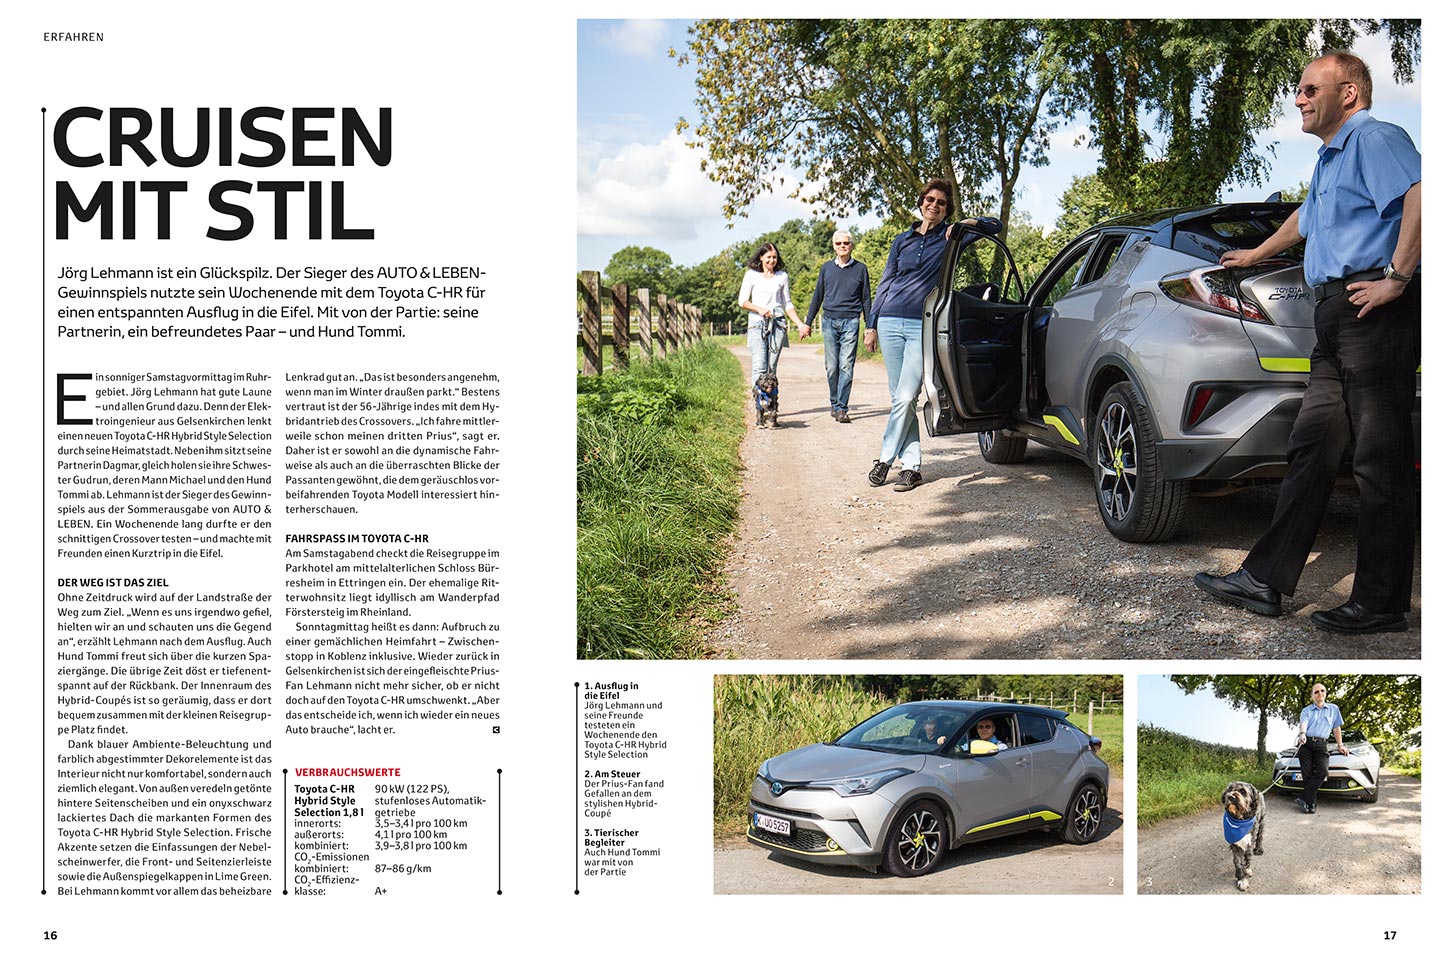 Autofotografie für das Toyota Magazin Auto & Leben in Gelsenkirchen